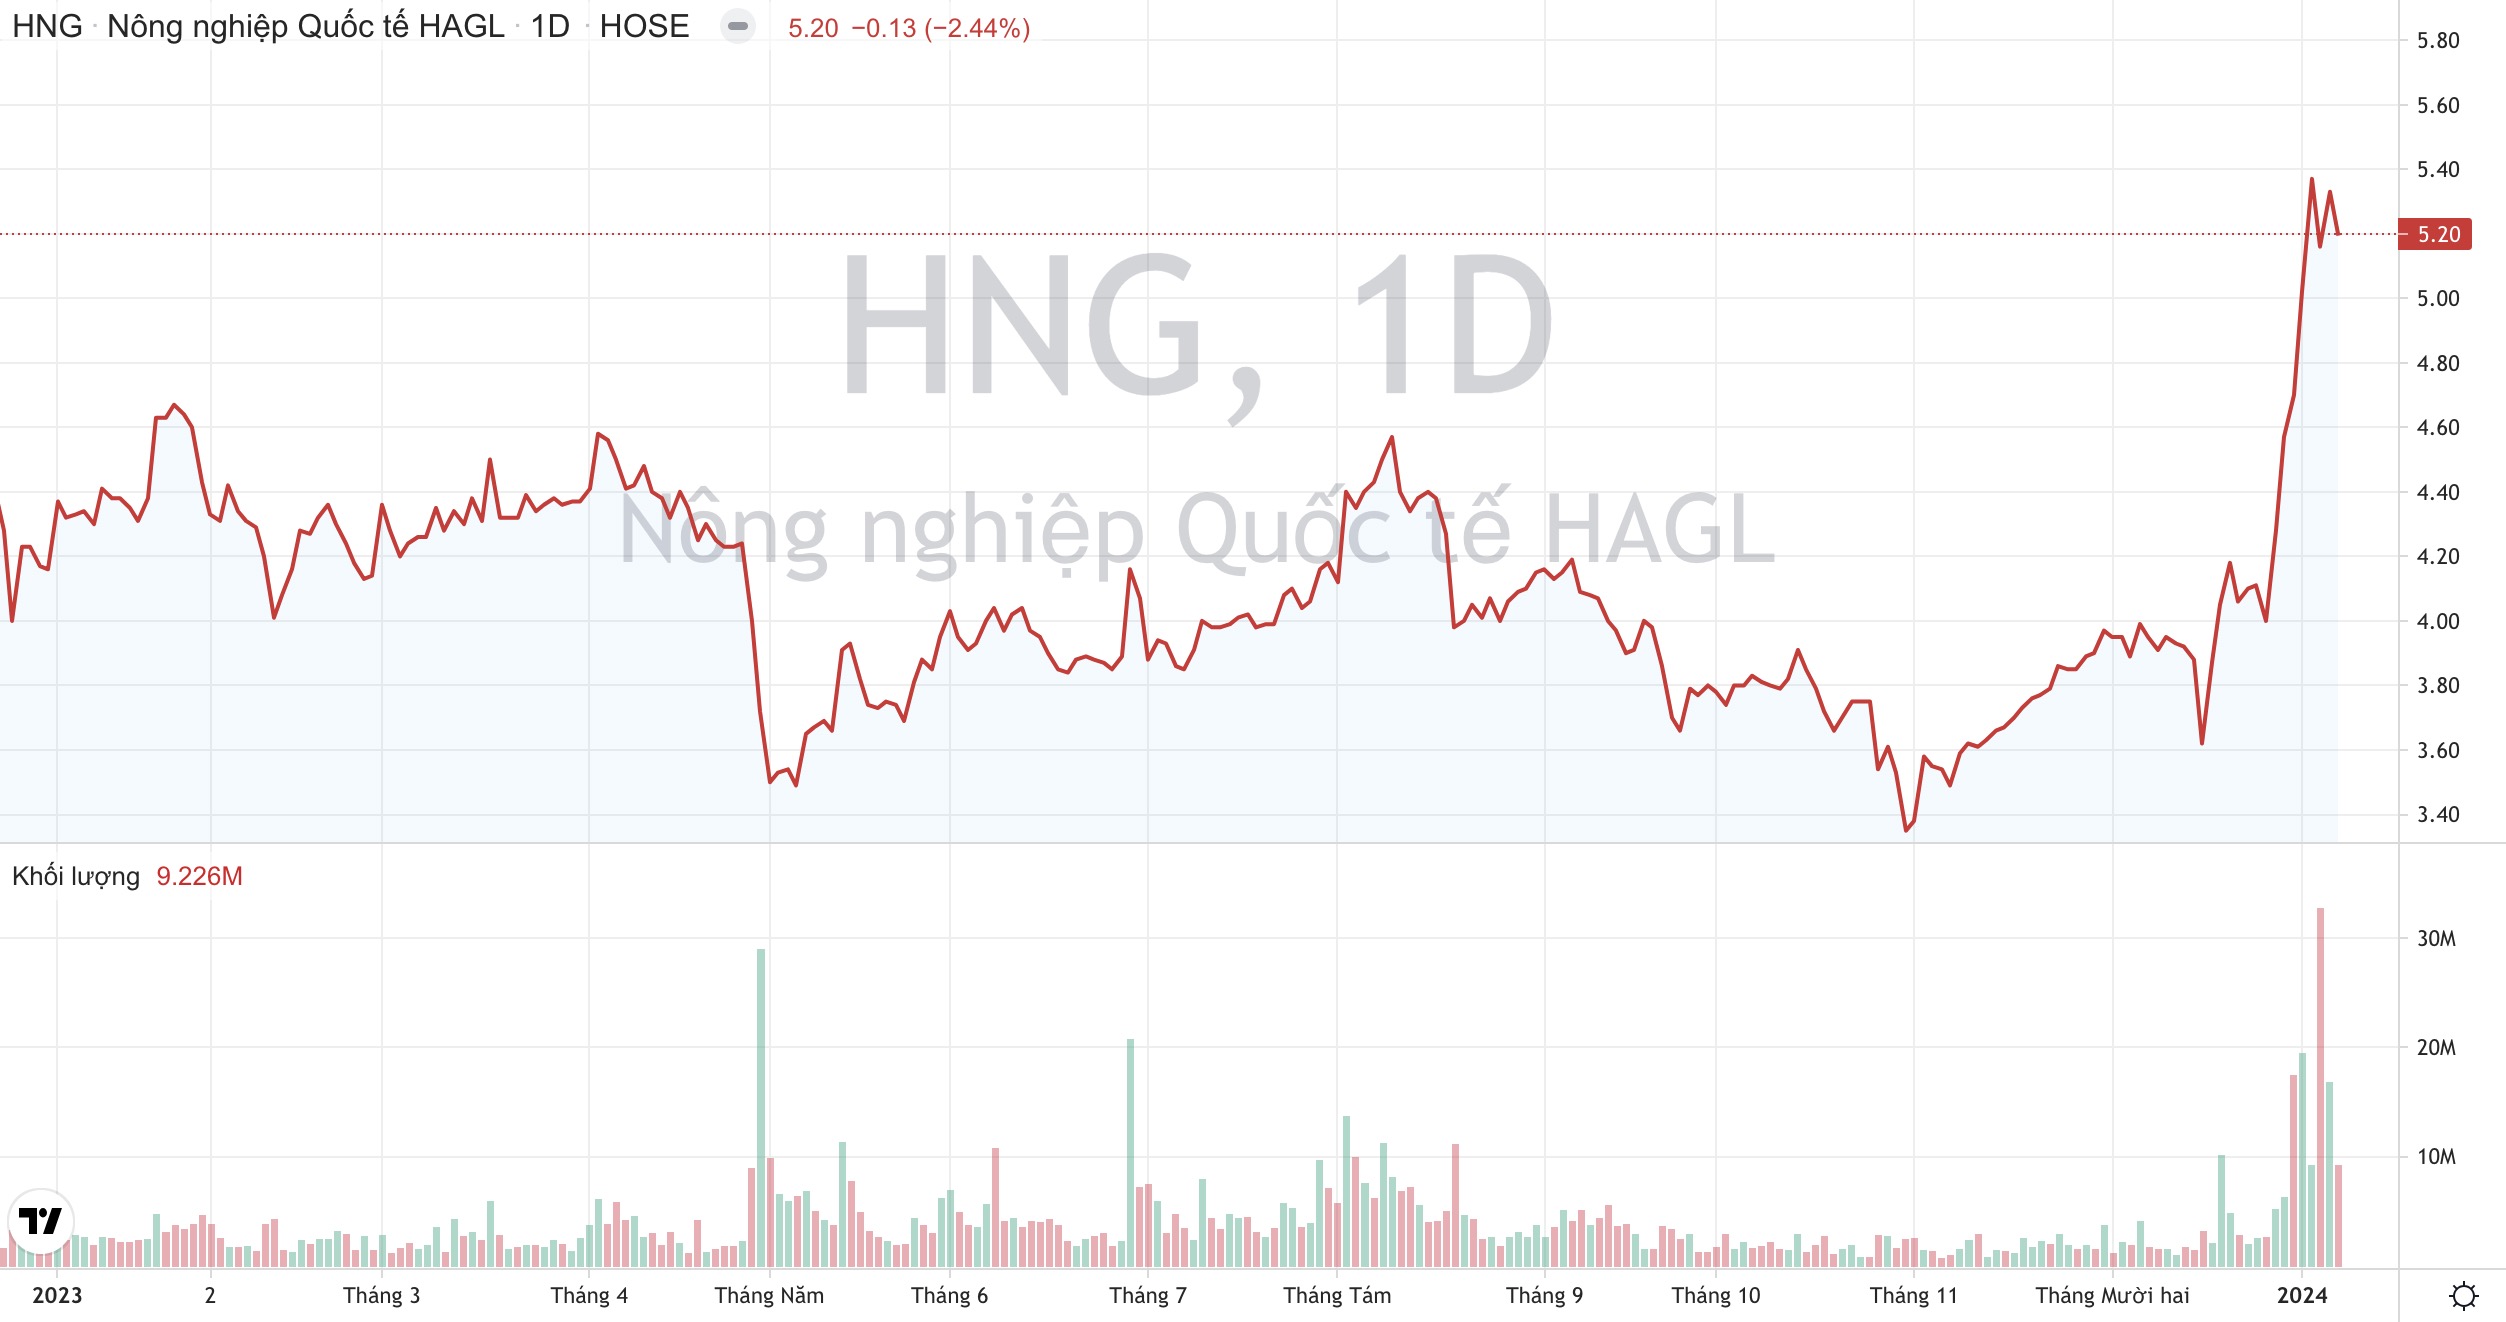 Cổ phiếu HNG tăng nóng, Hoàng Anh Gia Lai (HAG) bắt đầu thoái vốn khỏi HAGL Agrico